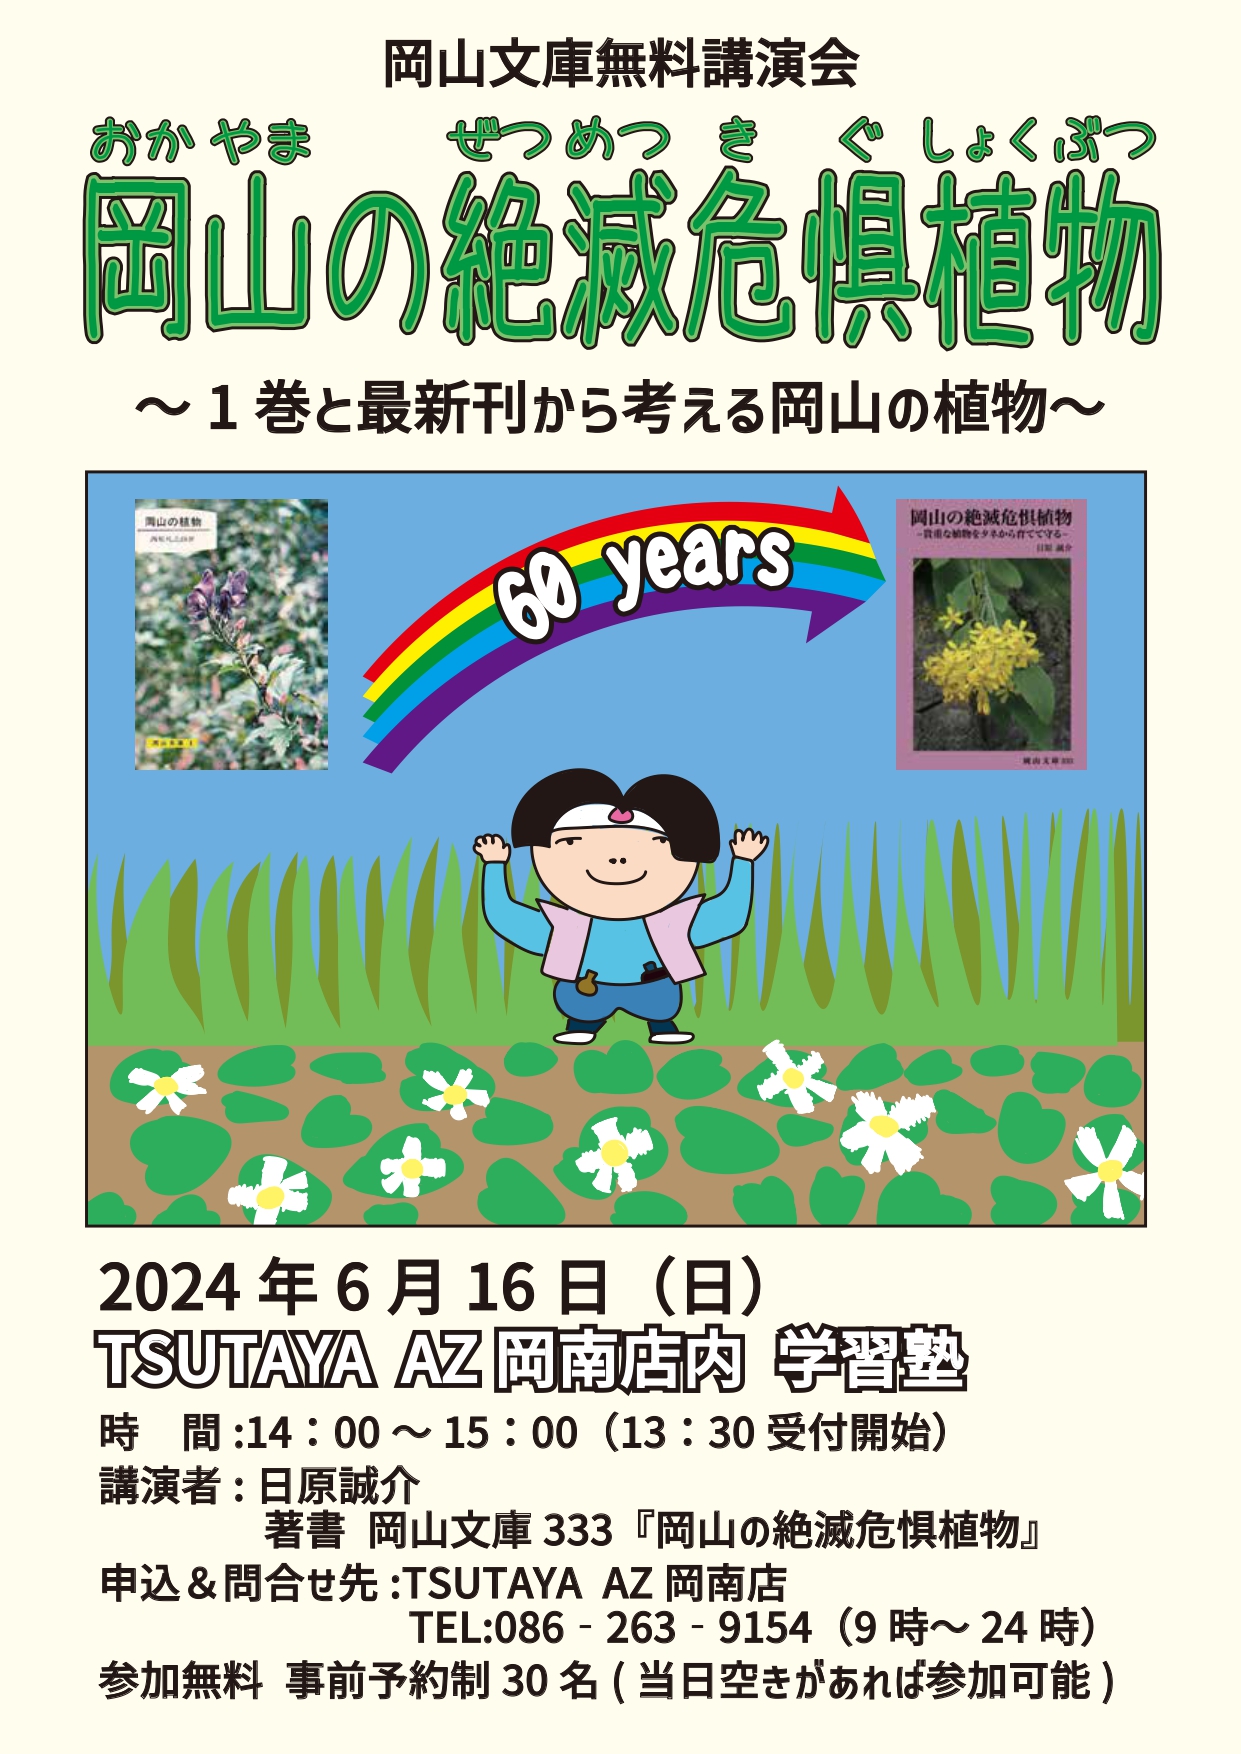 無料講演会「岡山の絶滅危惧植物ー1巻と最新刊から考える岡山の植物ー」